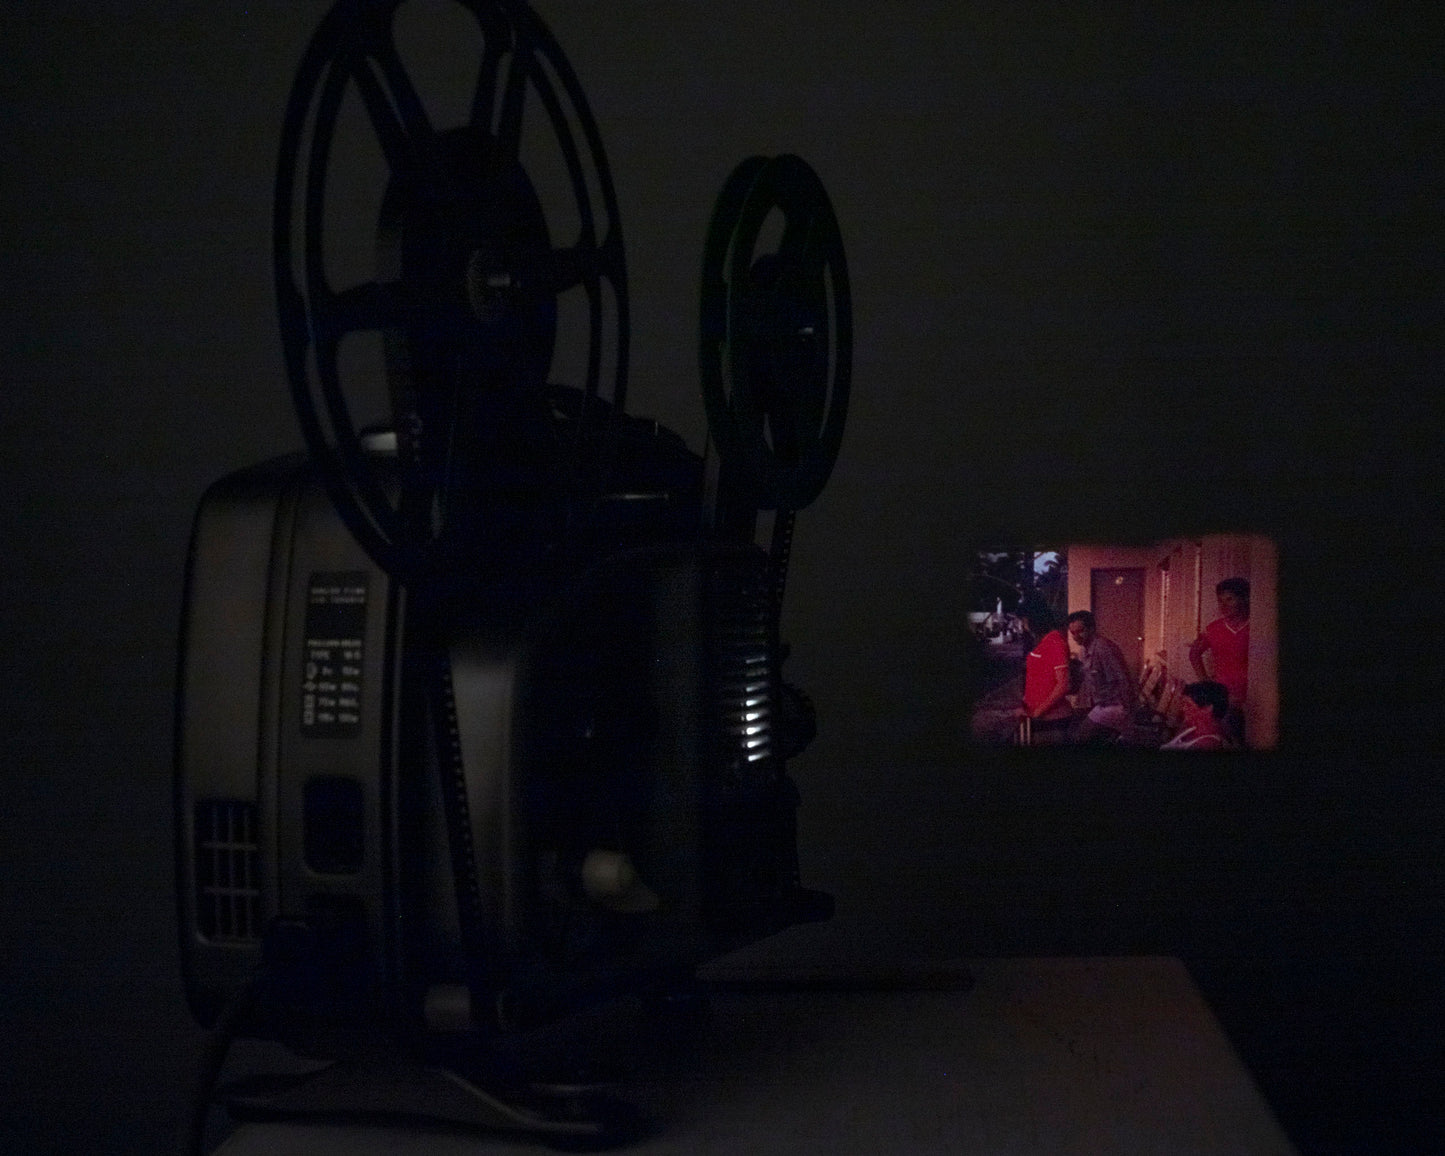 Paillard Bolex 18-5 8mm movie projector w/ take-up reel